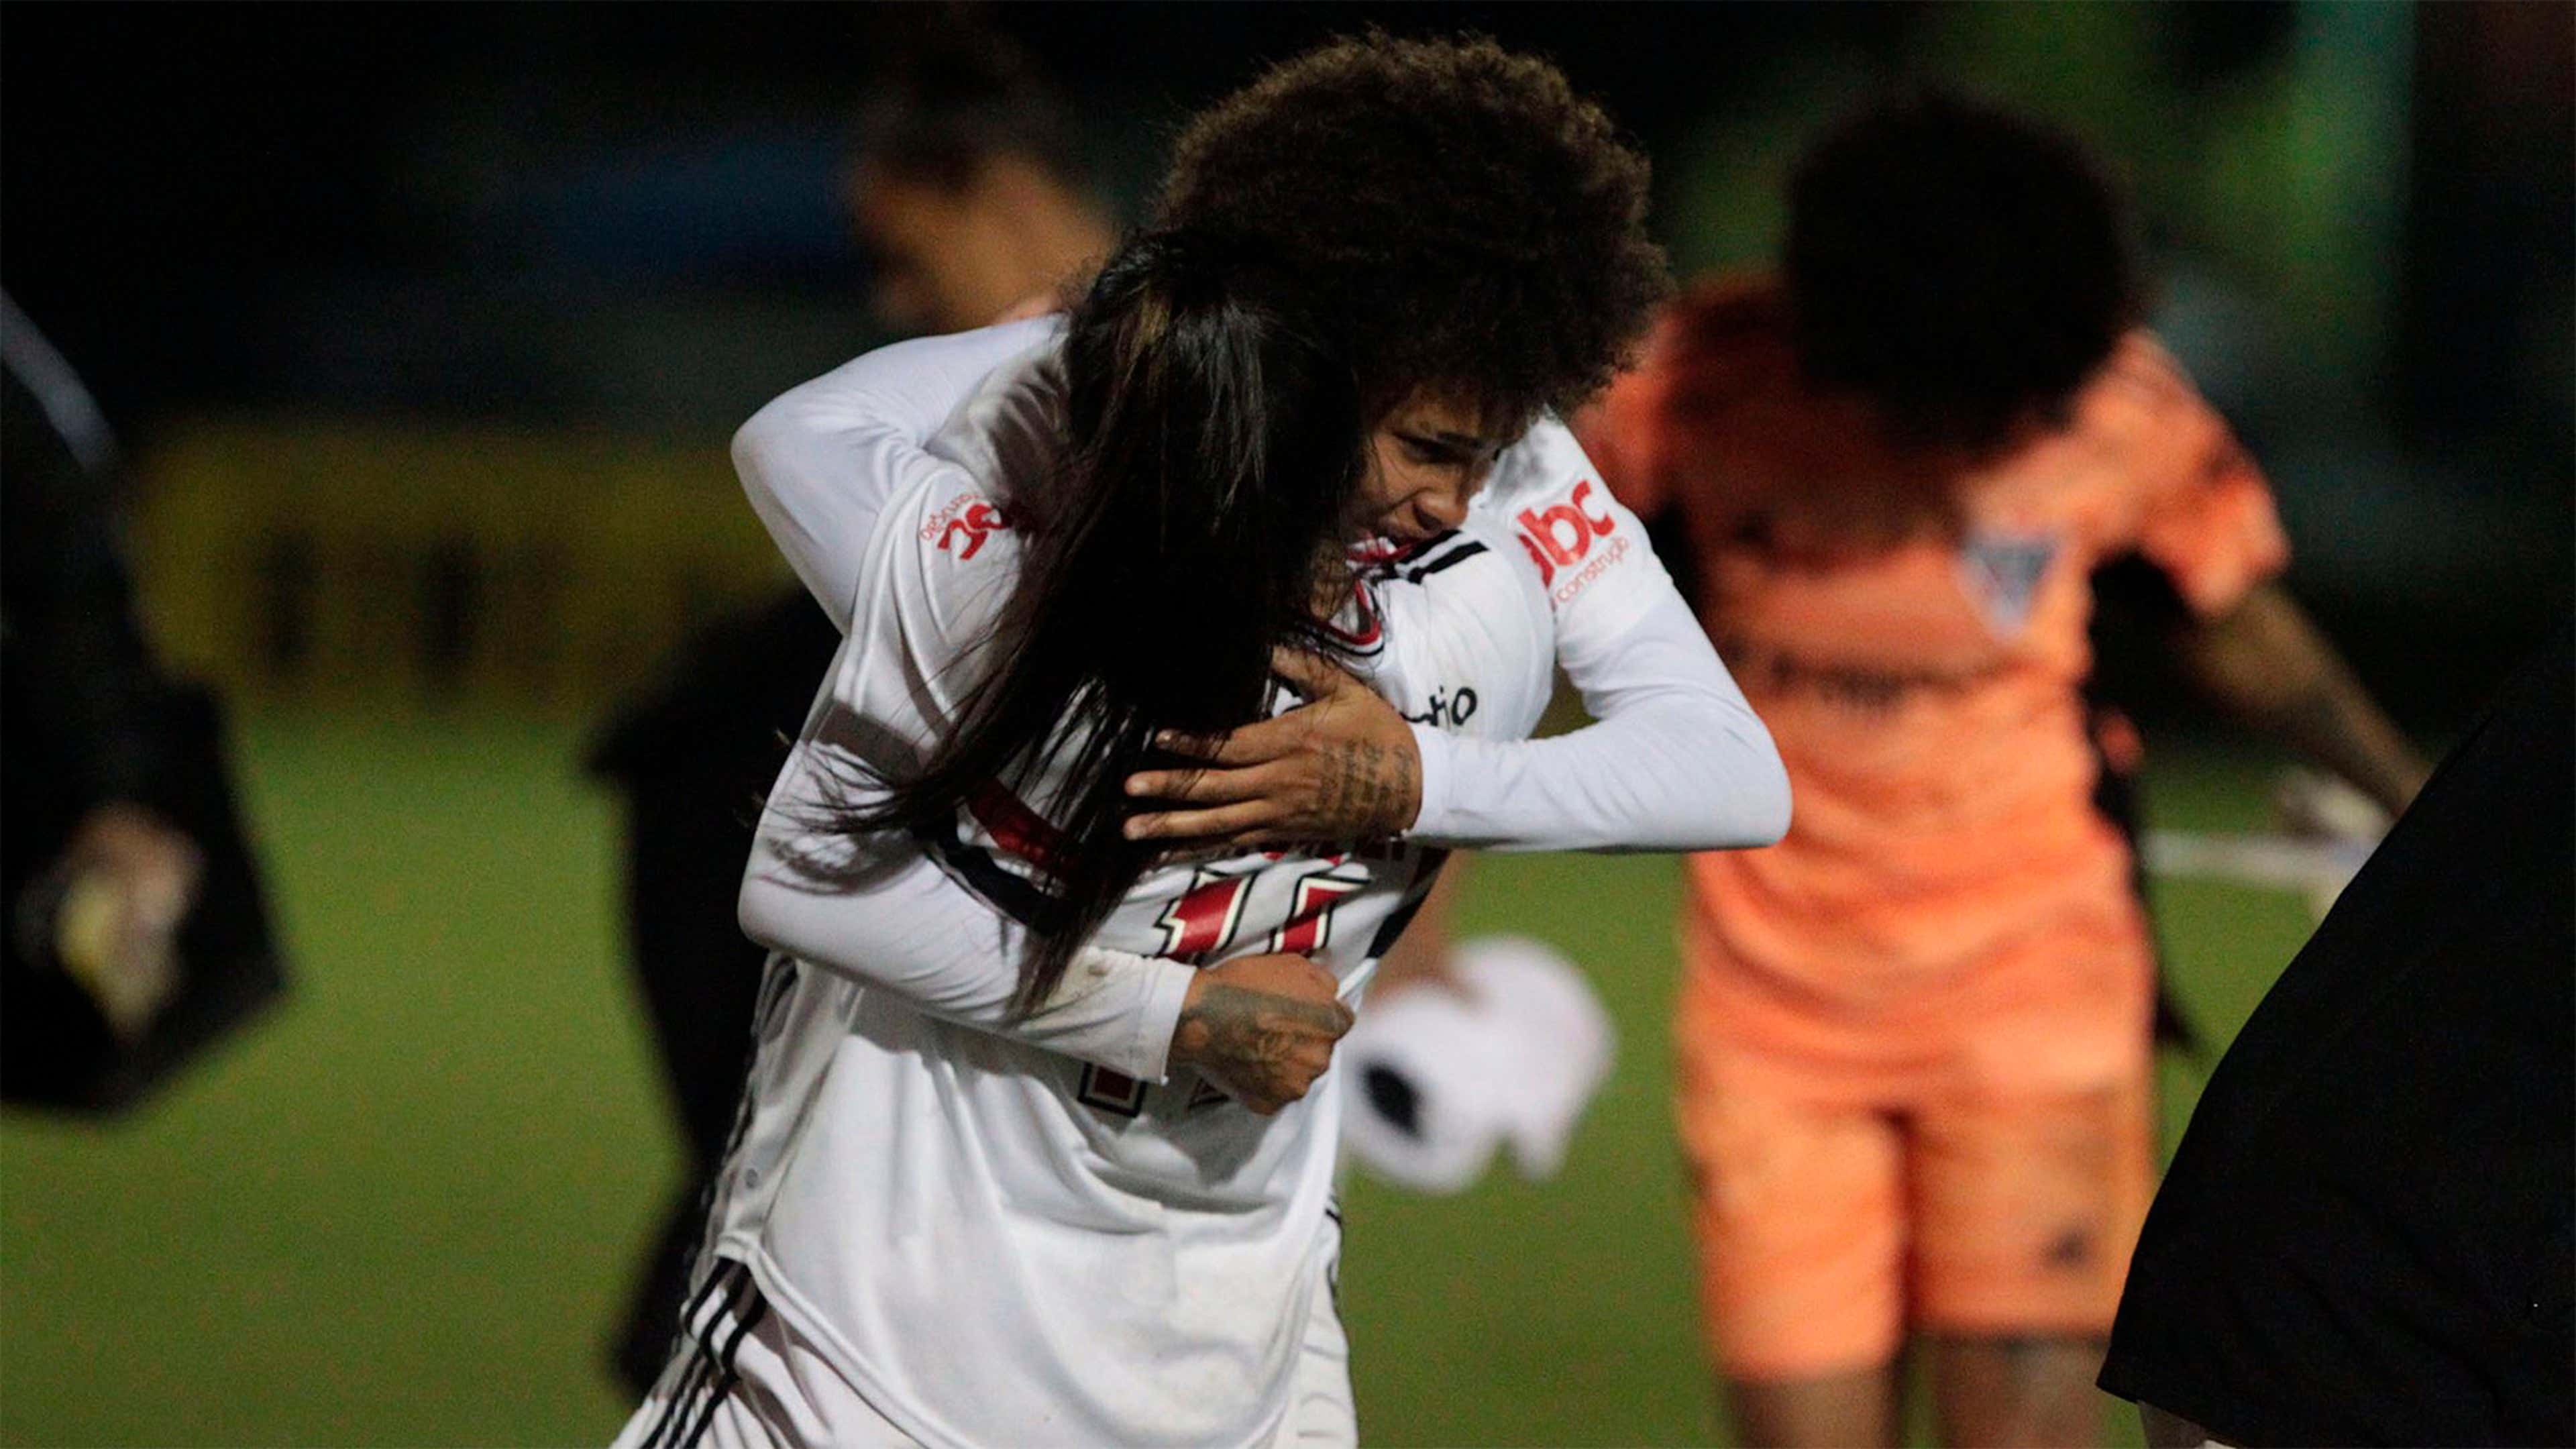 Brasileirão Feminino: Assista ao vivo e de graça São Paulo x Palmeiras